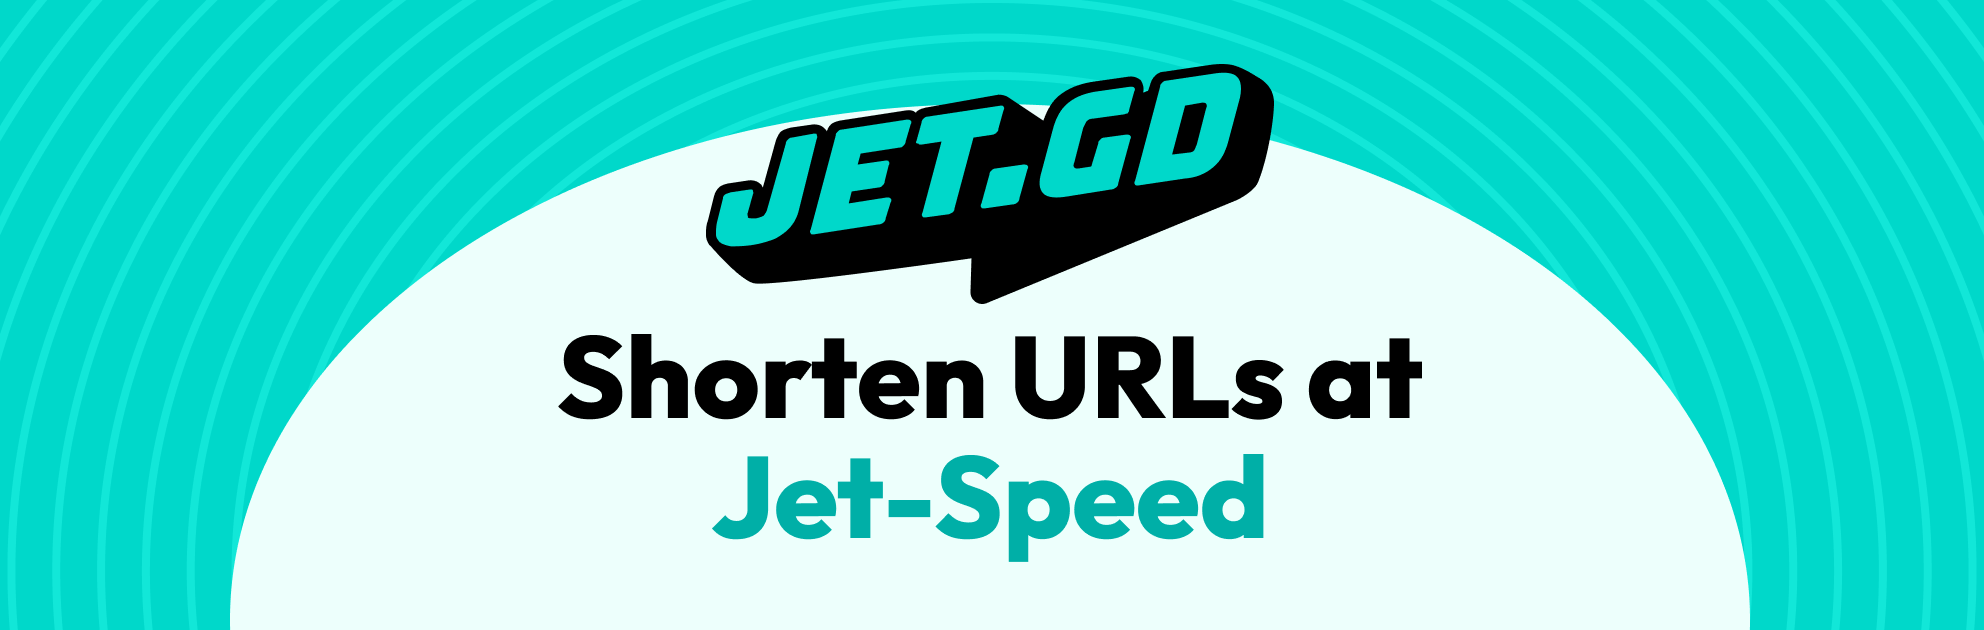 Jet.GD branding banner